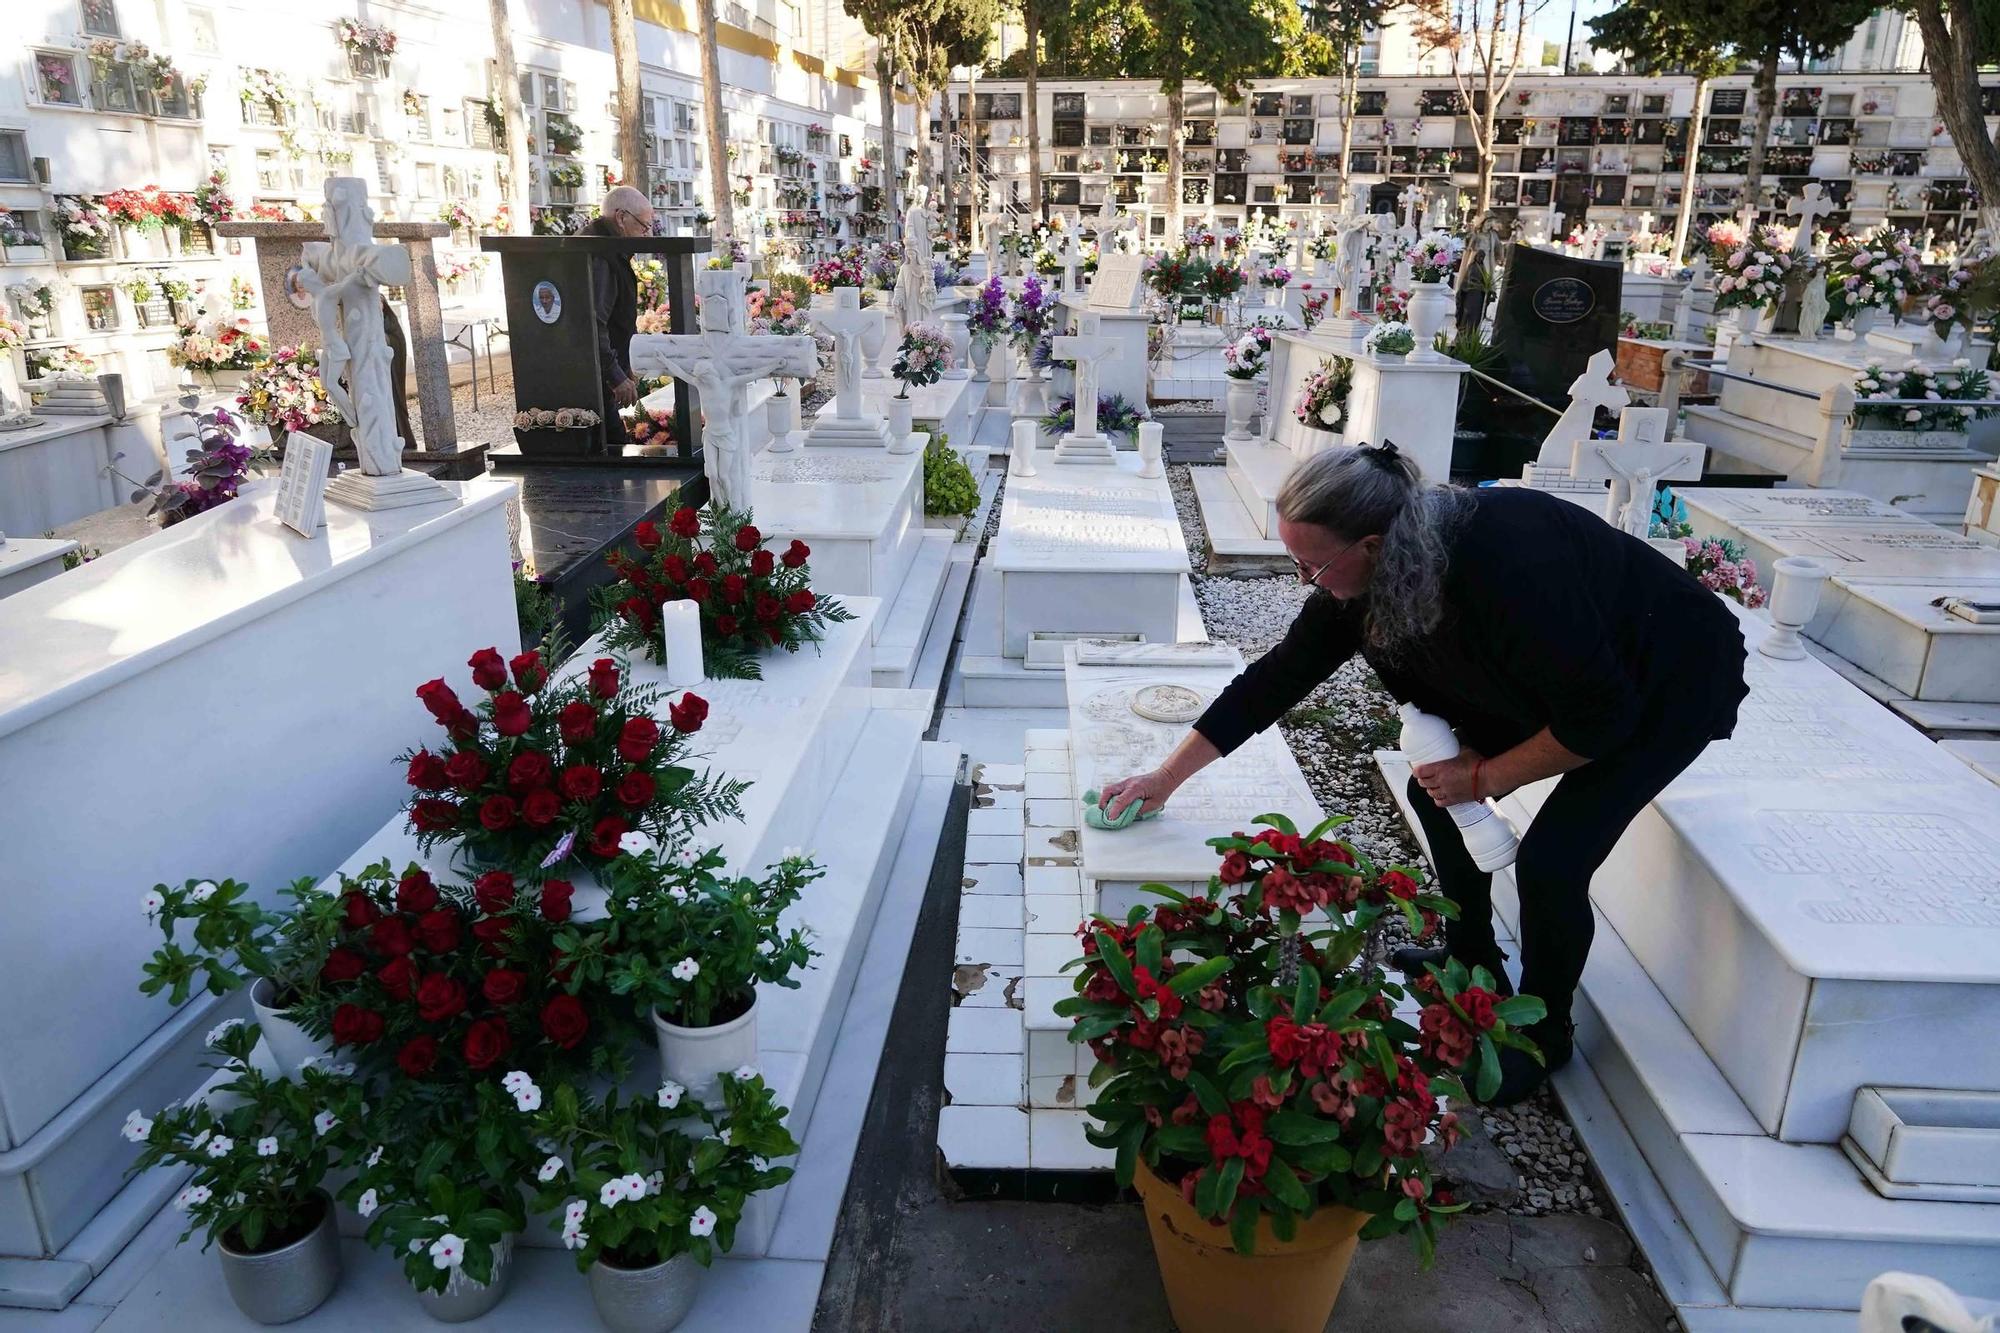 Una mujer limpiaba este miércoles una tumba en el Cementerio de San Juan, en El Palo.